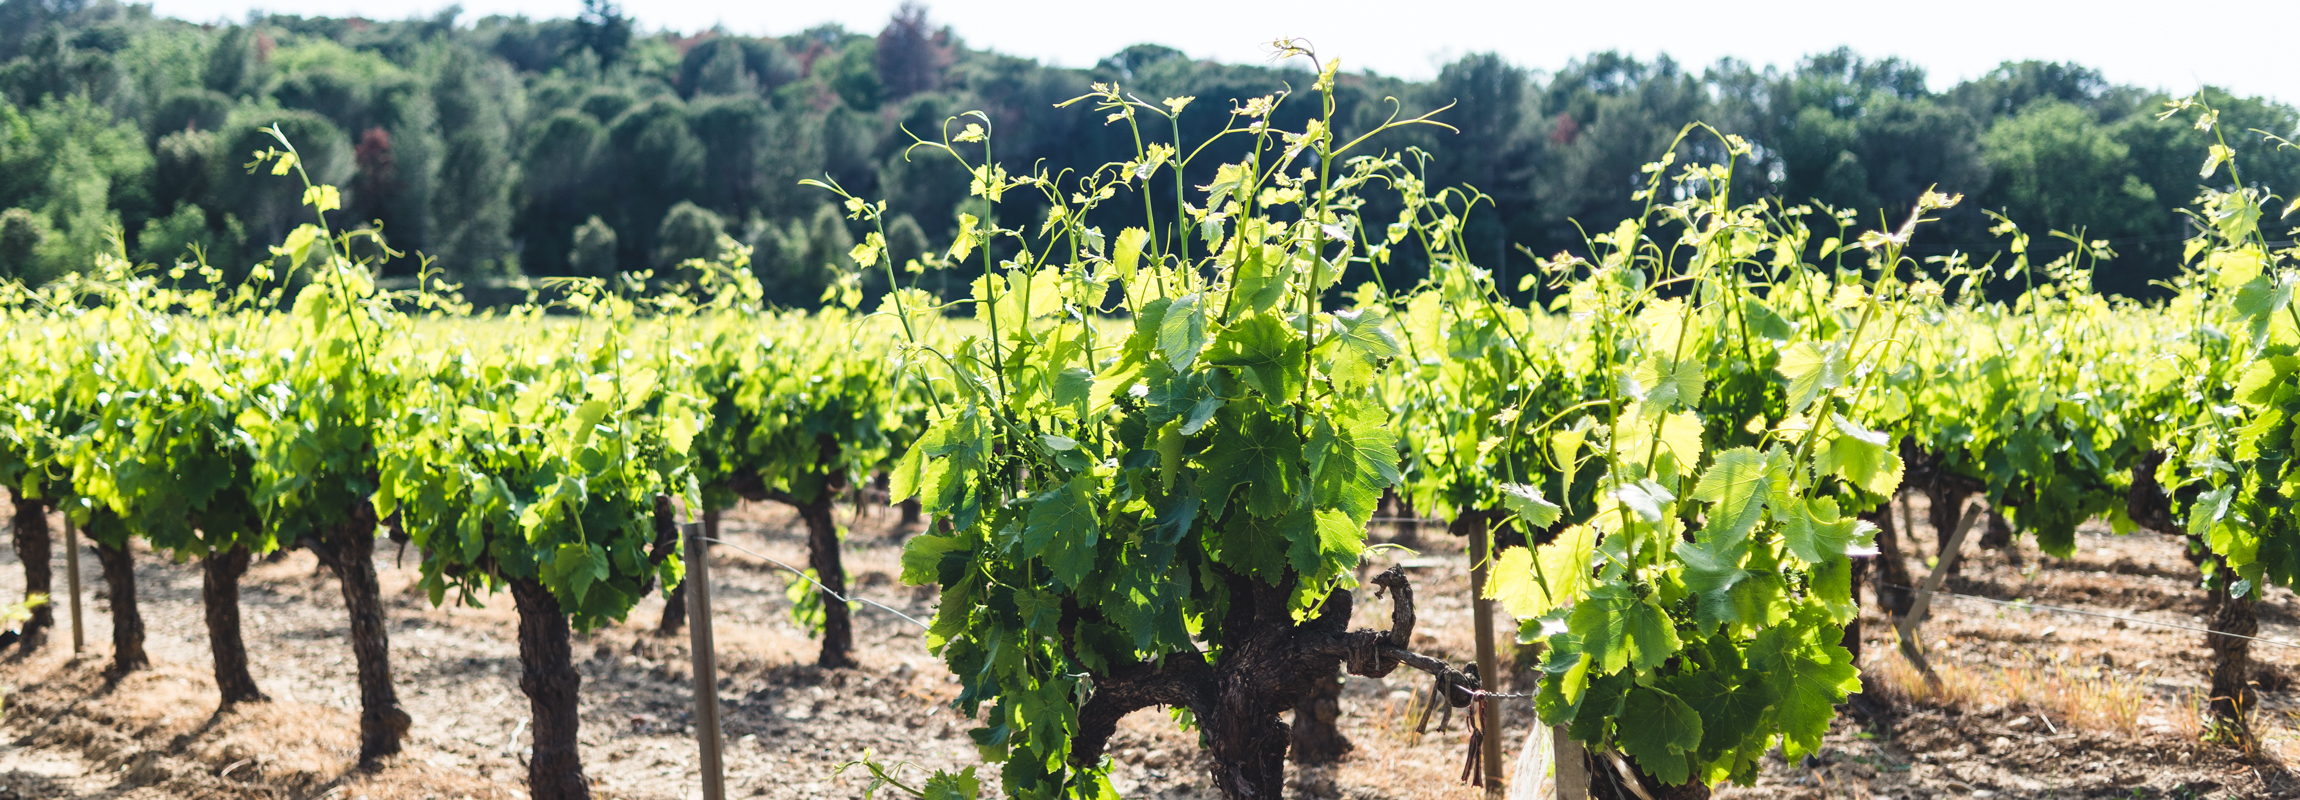 Les vignes ornent le paysage de Provence, dans le sud de la France. Photos d'une vigne dans les environs immédiats de l'Hôtel Château de Montcaud